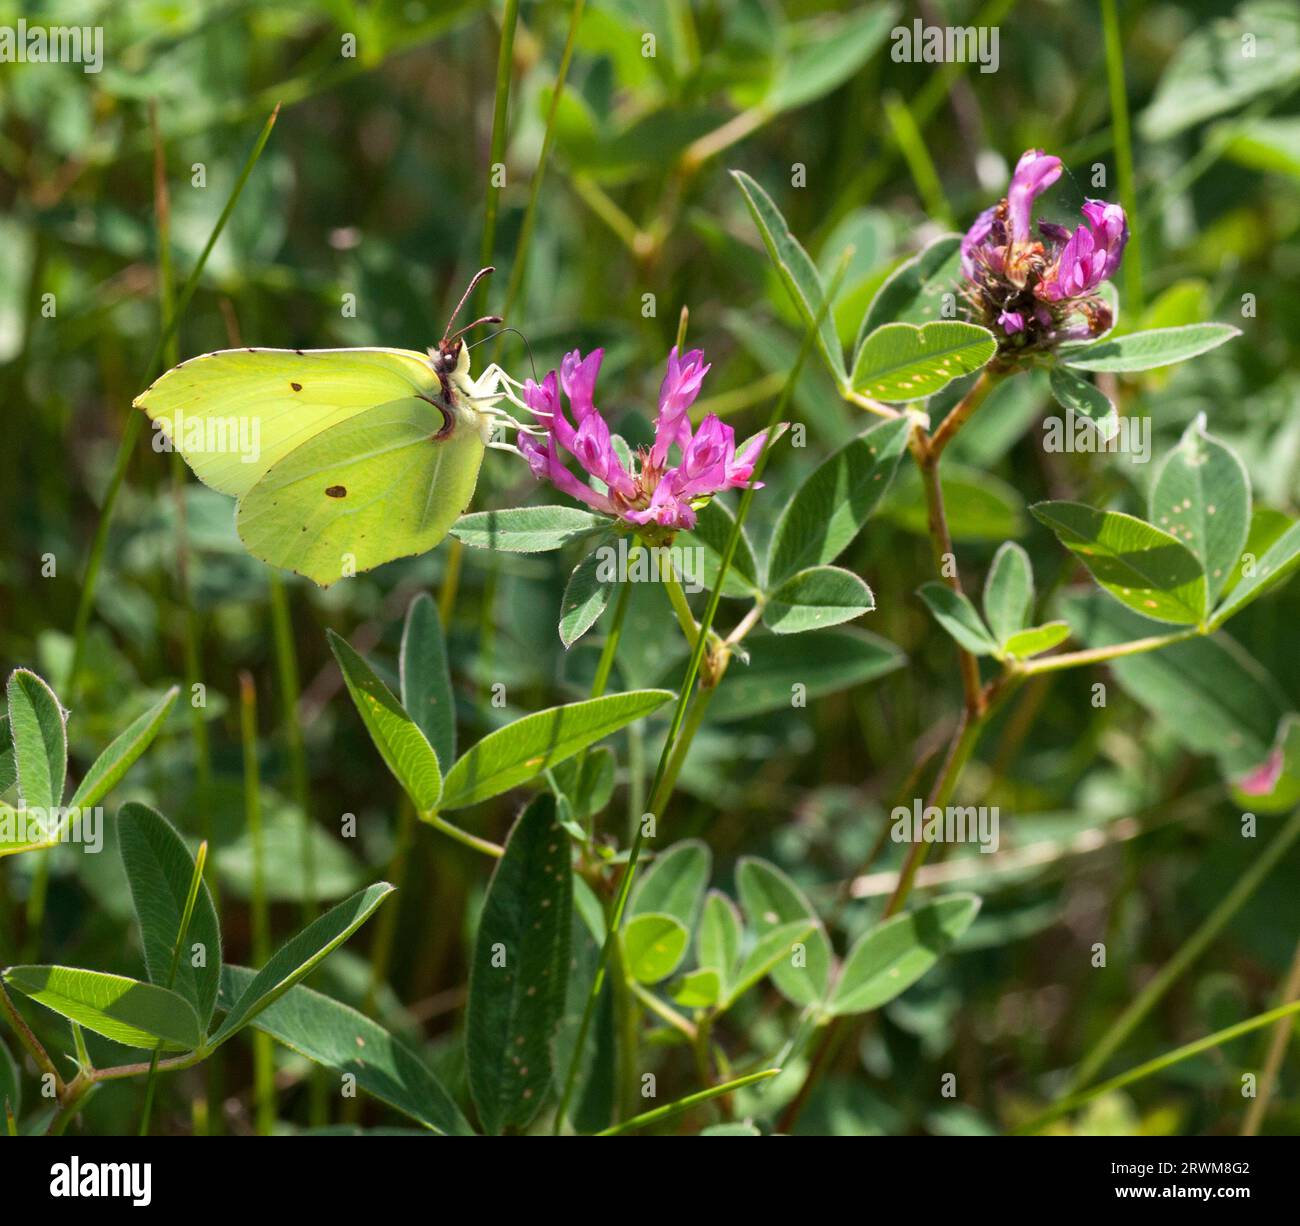 GENOPTERYX RHAMNI der gewöhnliche Brimstone-Schmetterling Stockfoto